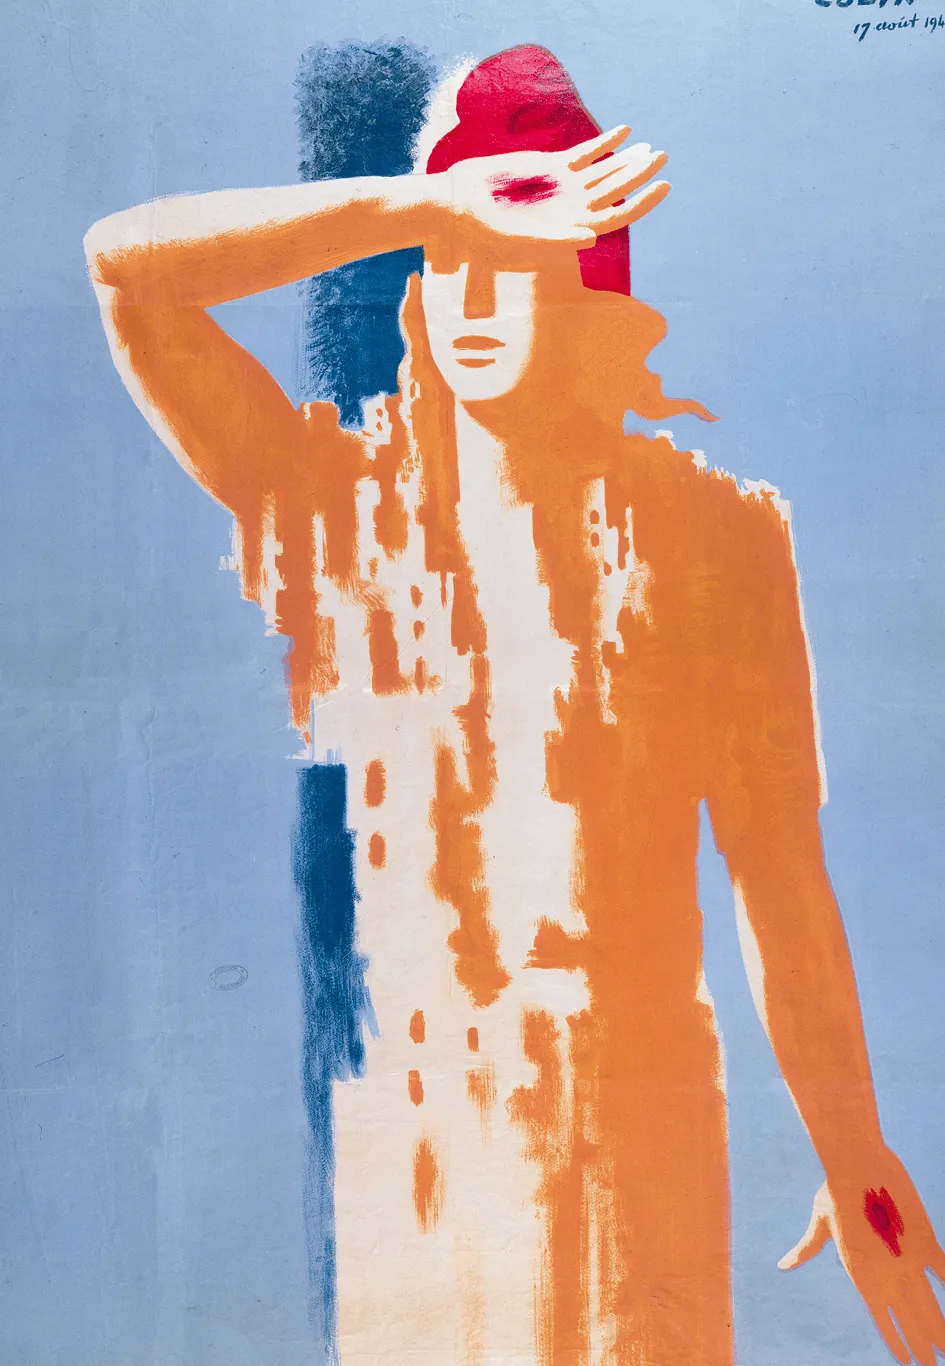 Paul Colin, La Marianne aux stigmates, affiche, 17 août 1944.